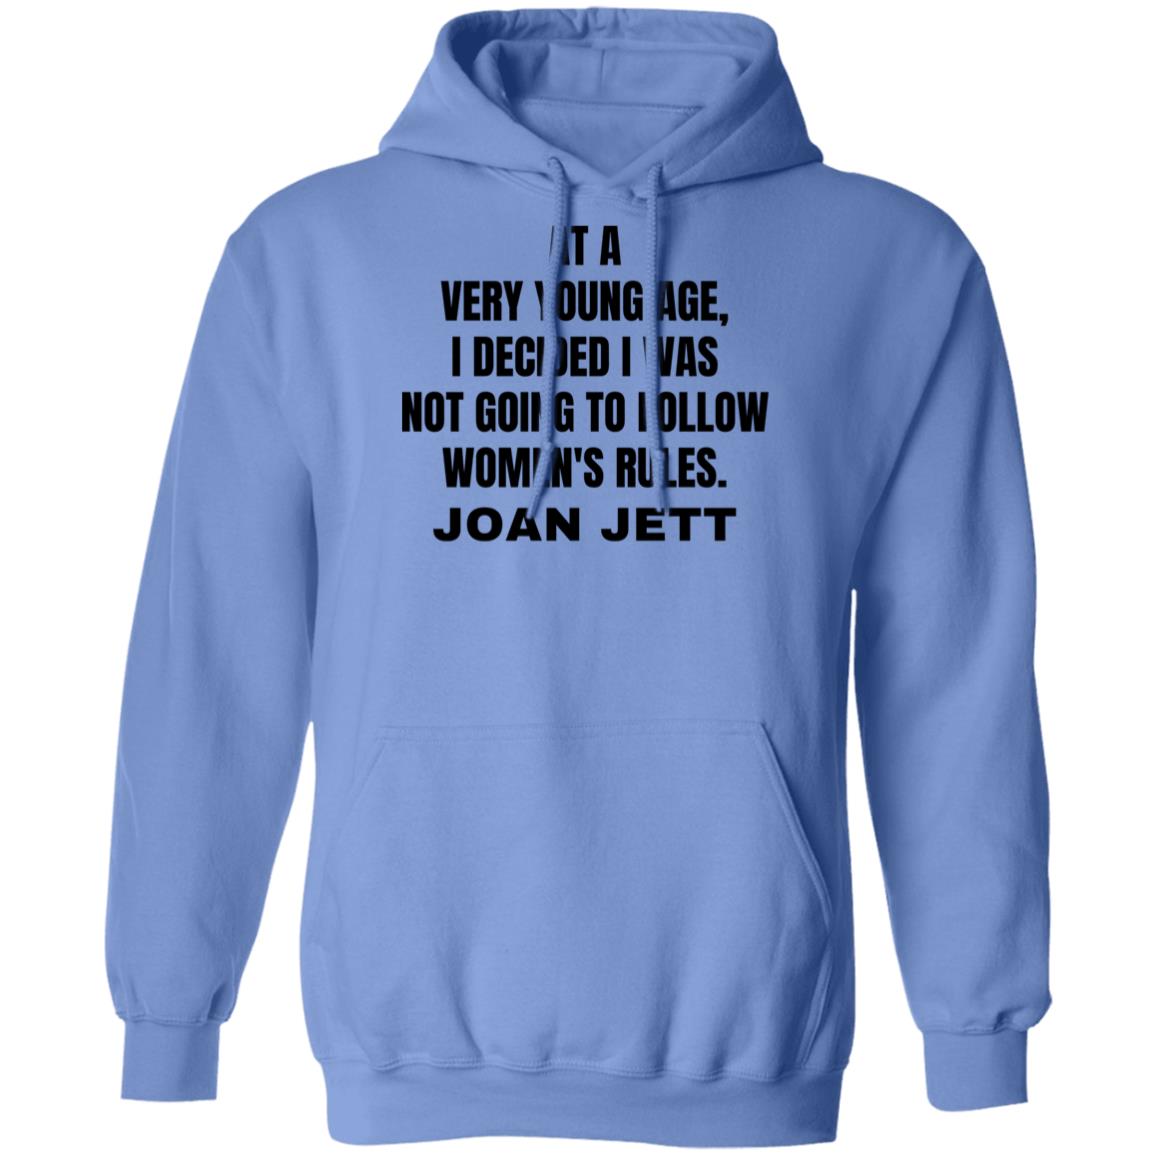 Joan Jett Women's Rules Quote Hooded Sweatshirt